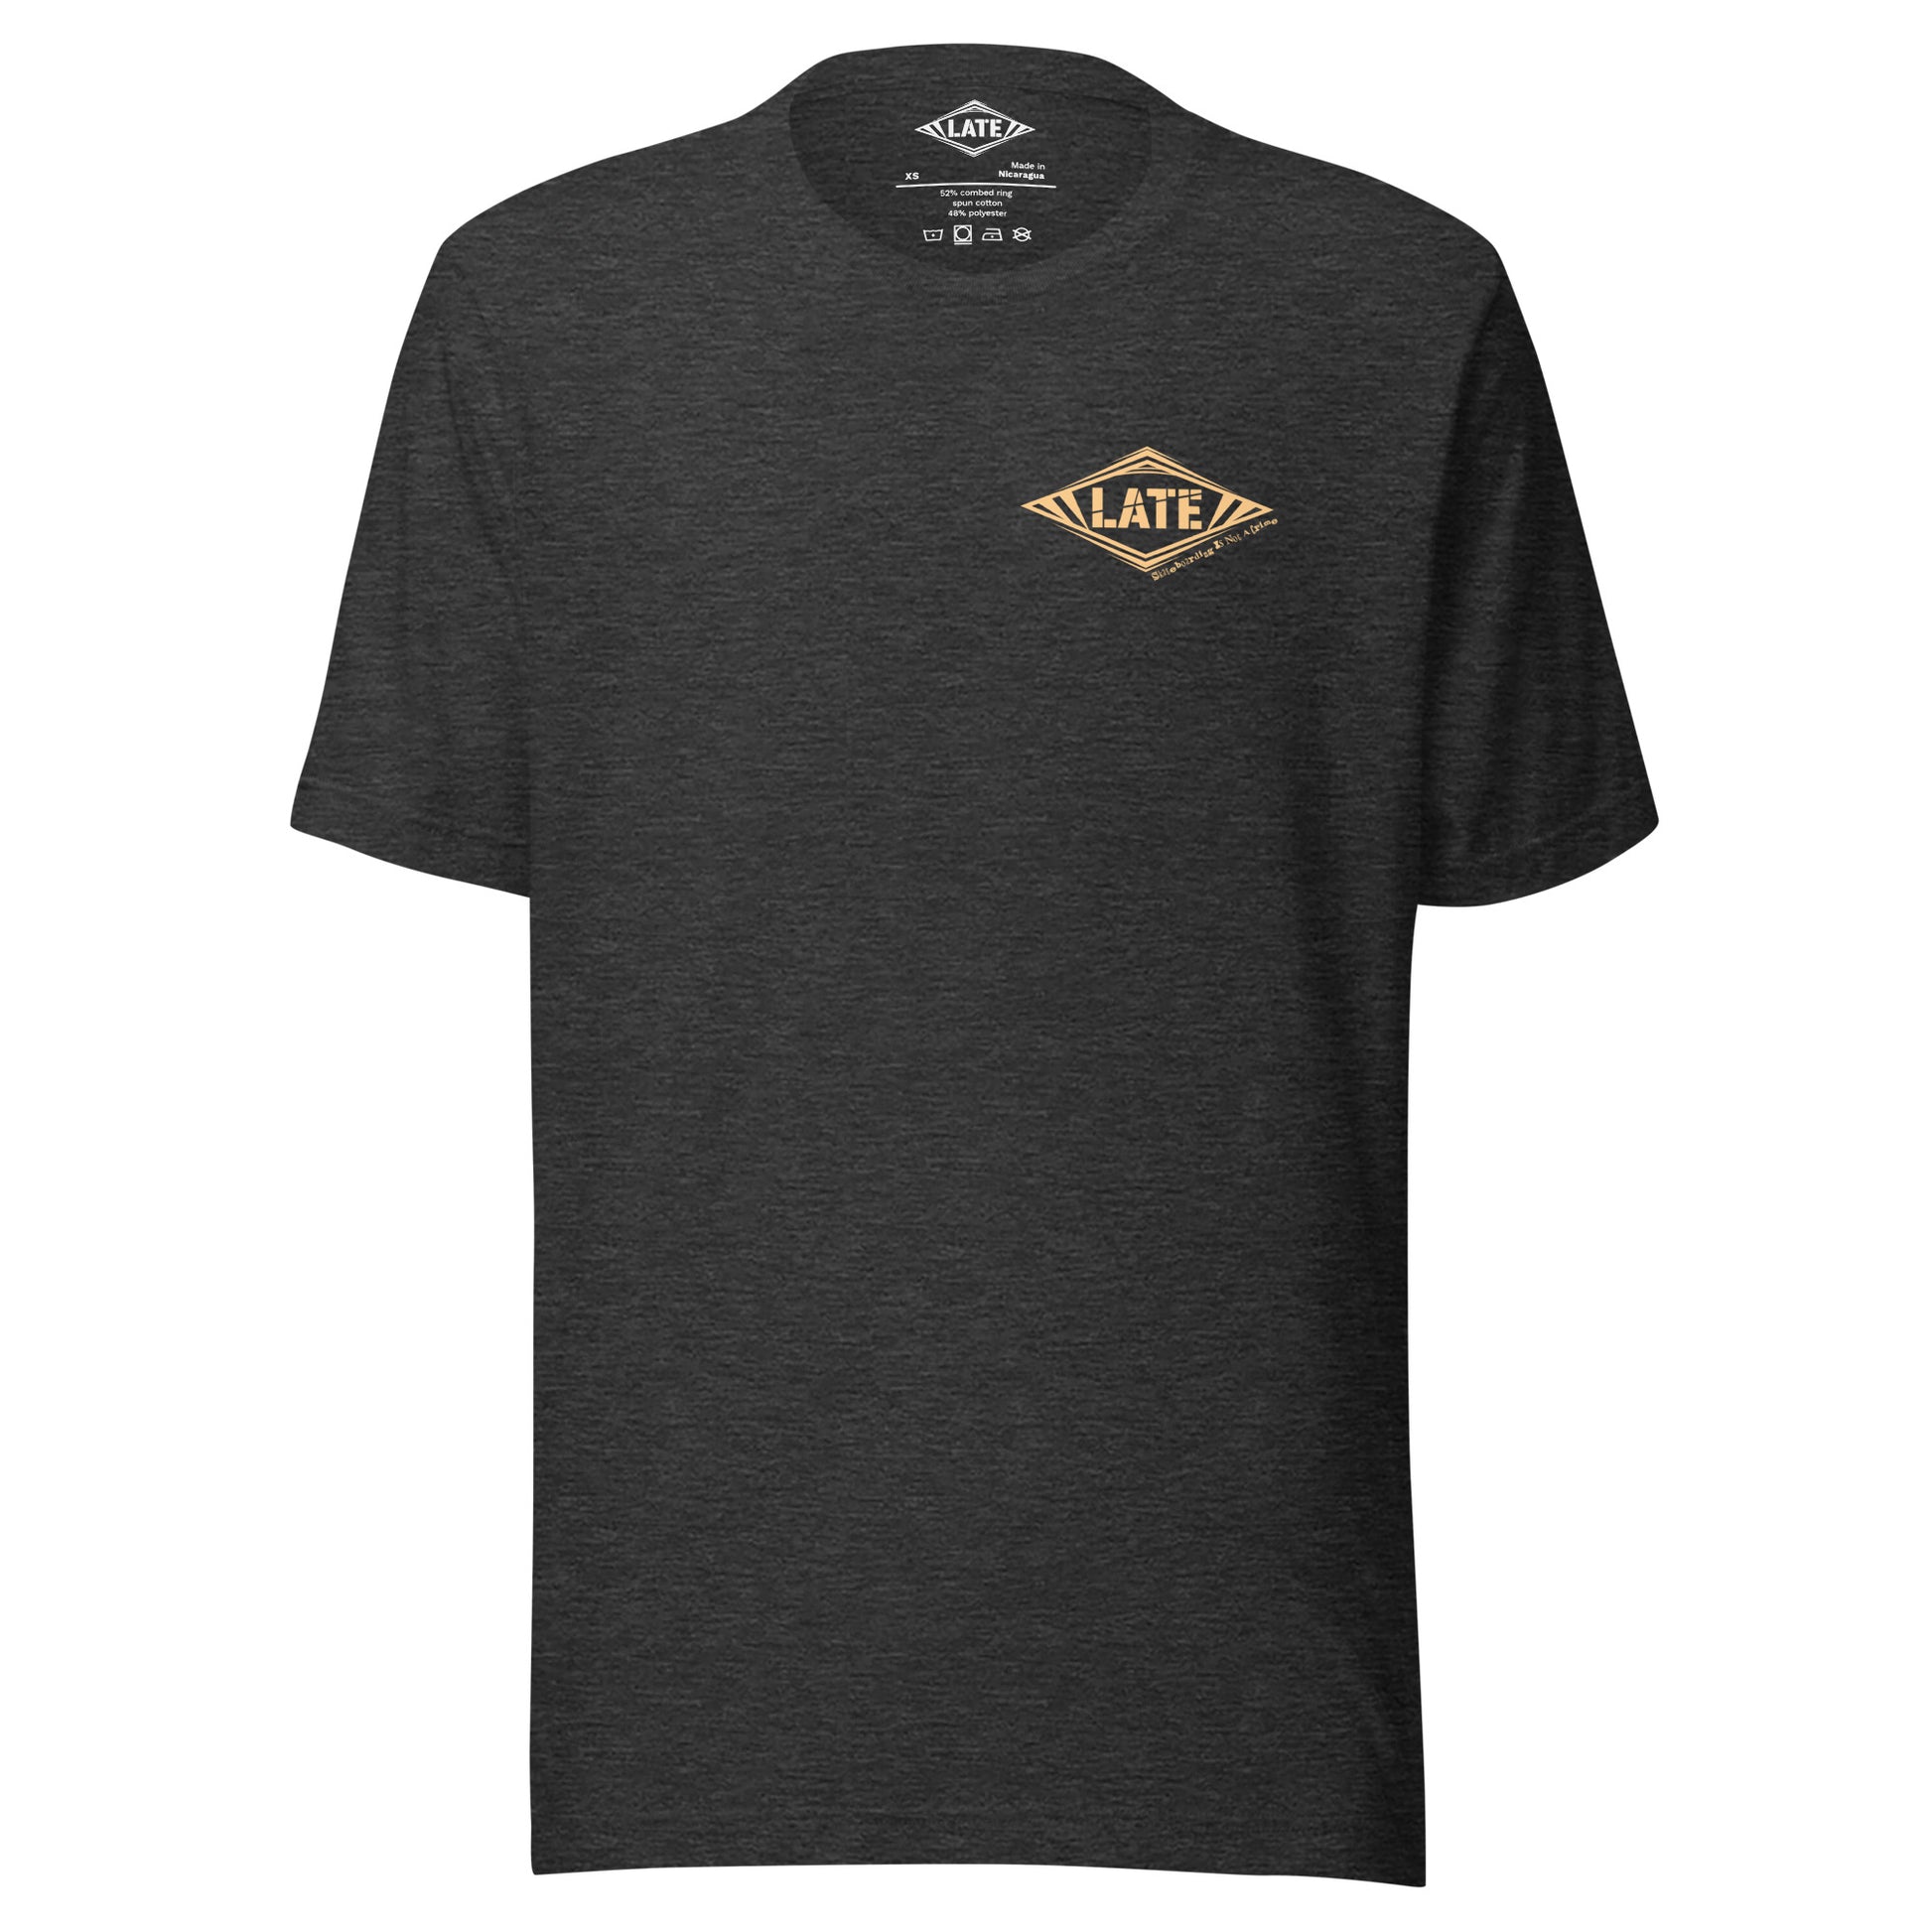 T-Shirt Skateboarding Is Not A Crime unisex Logo marque de vêtement Late Tshirt face couleur gris foncé